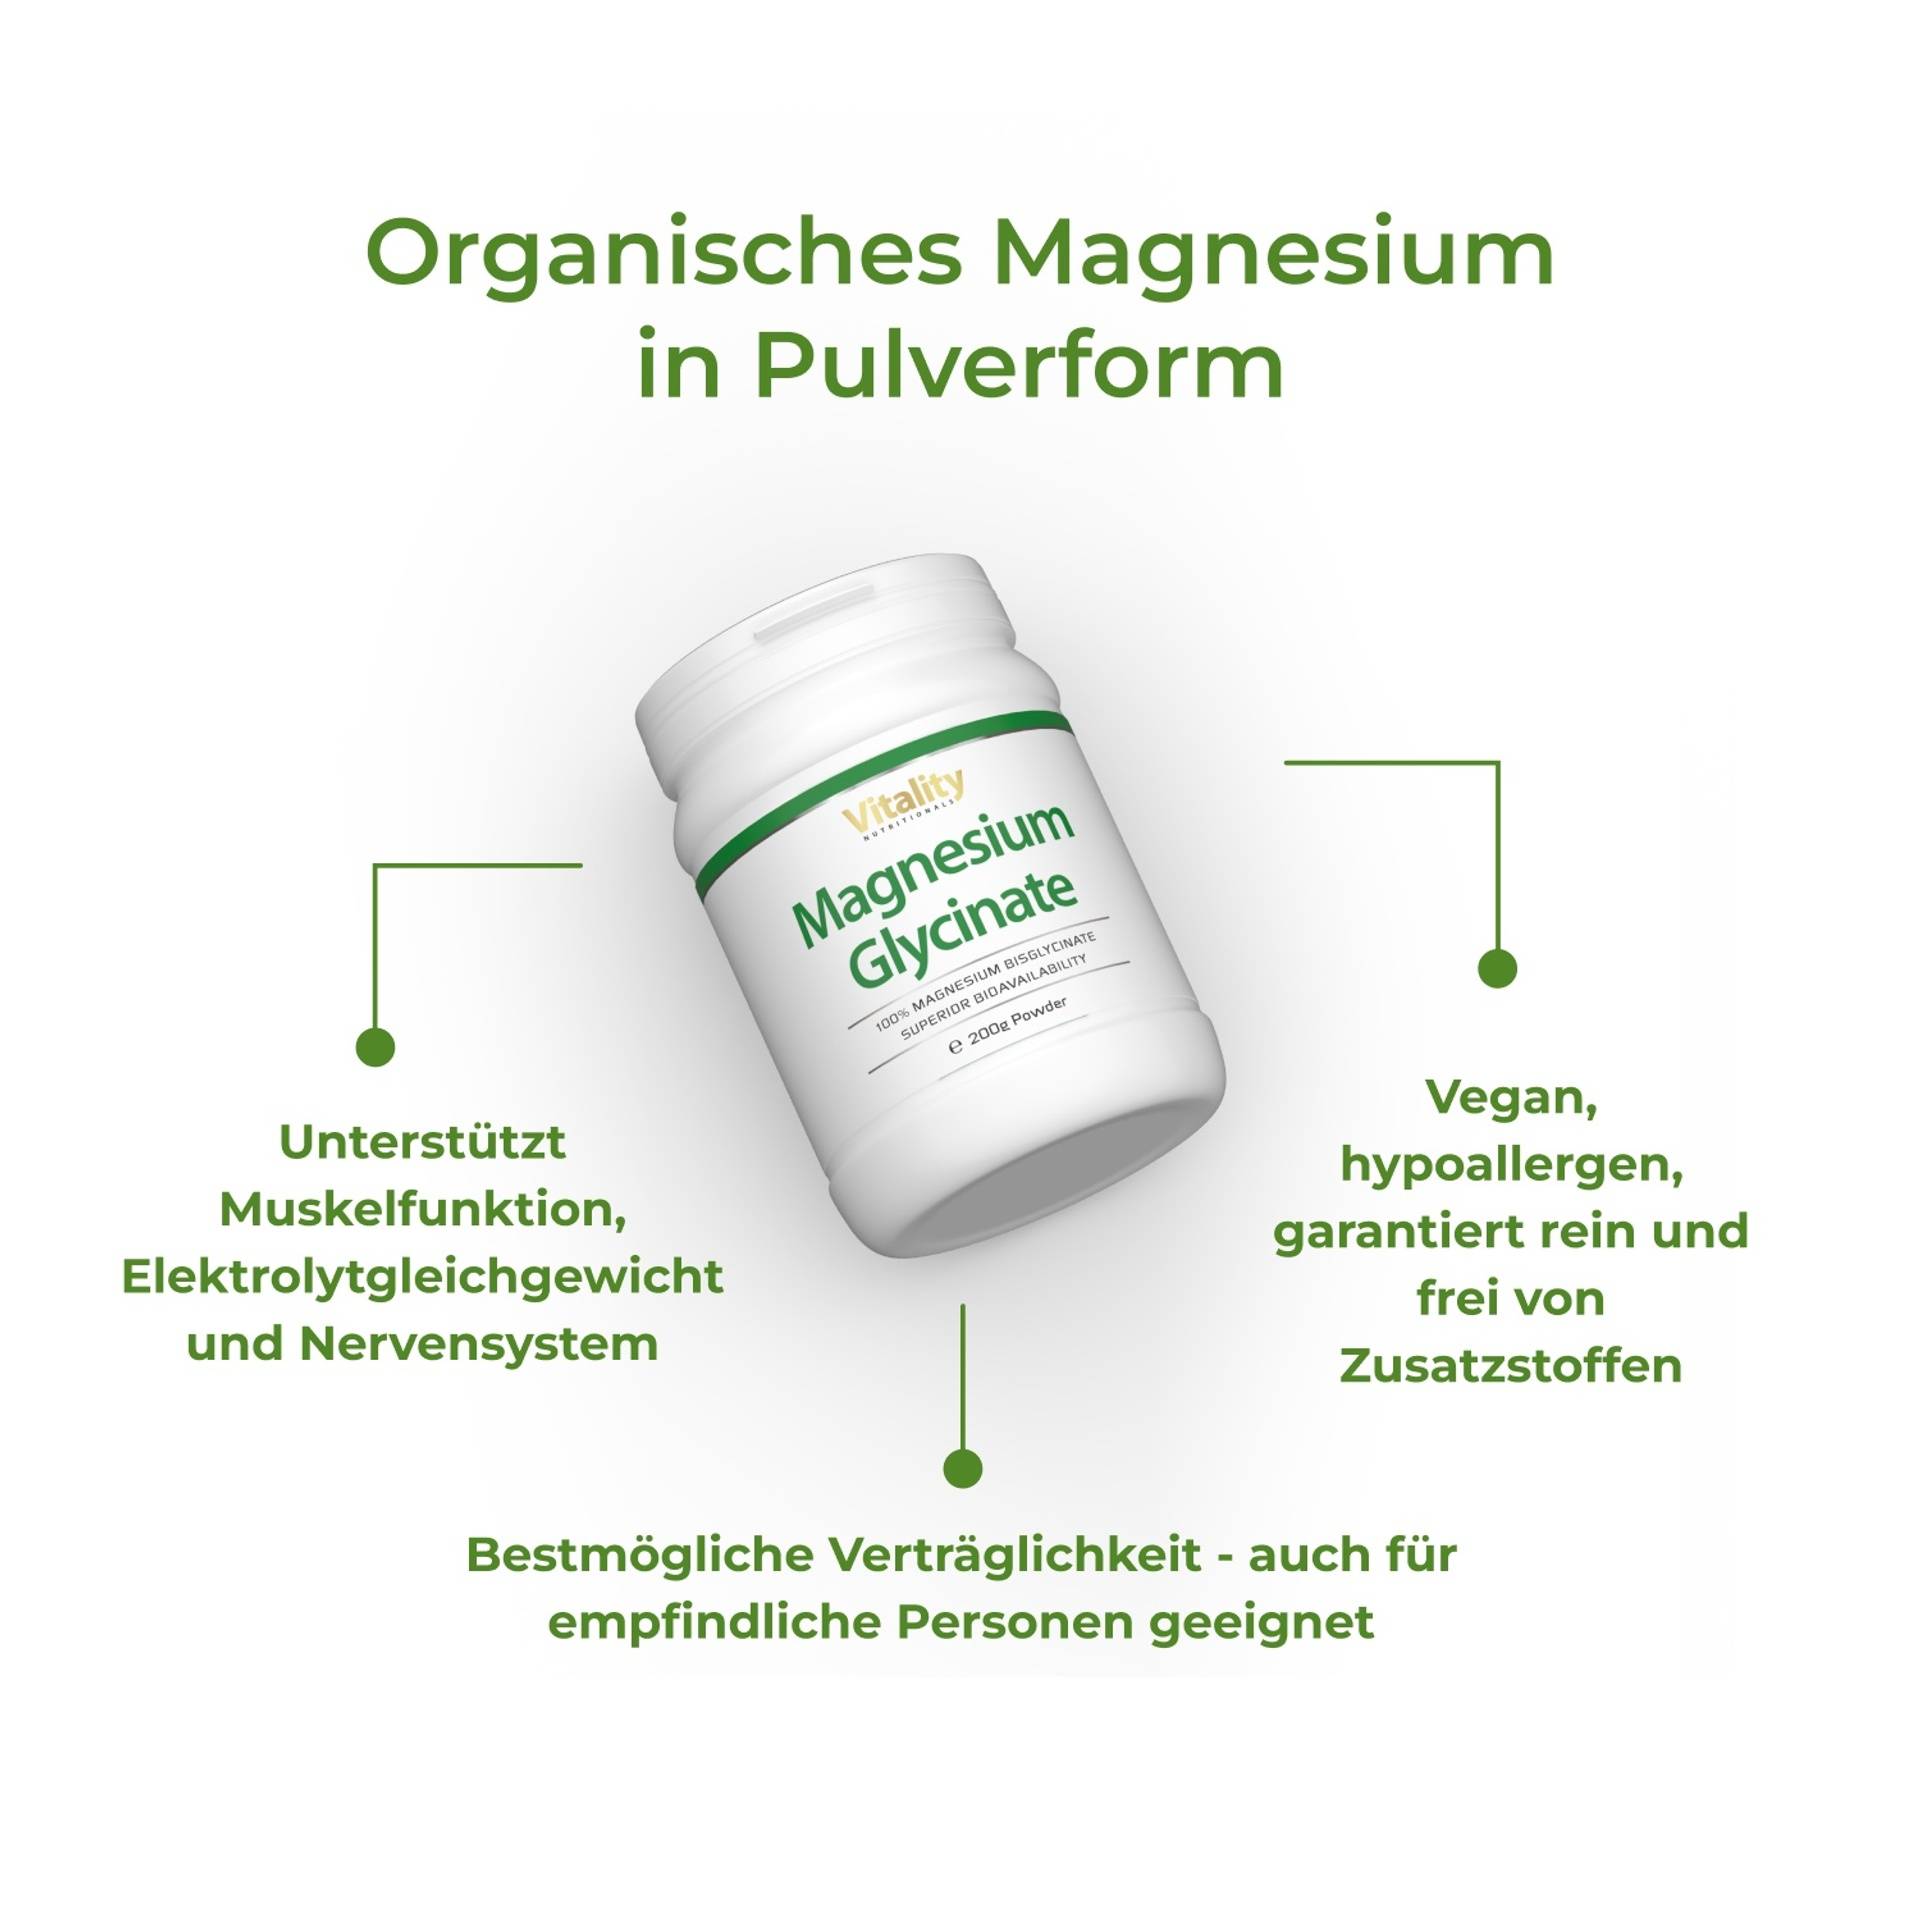 3_Benefits_Magnesium Glycinat Powder_6973-0C_DE.png